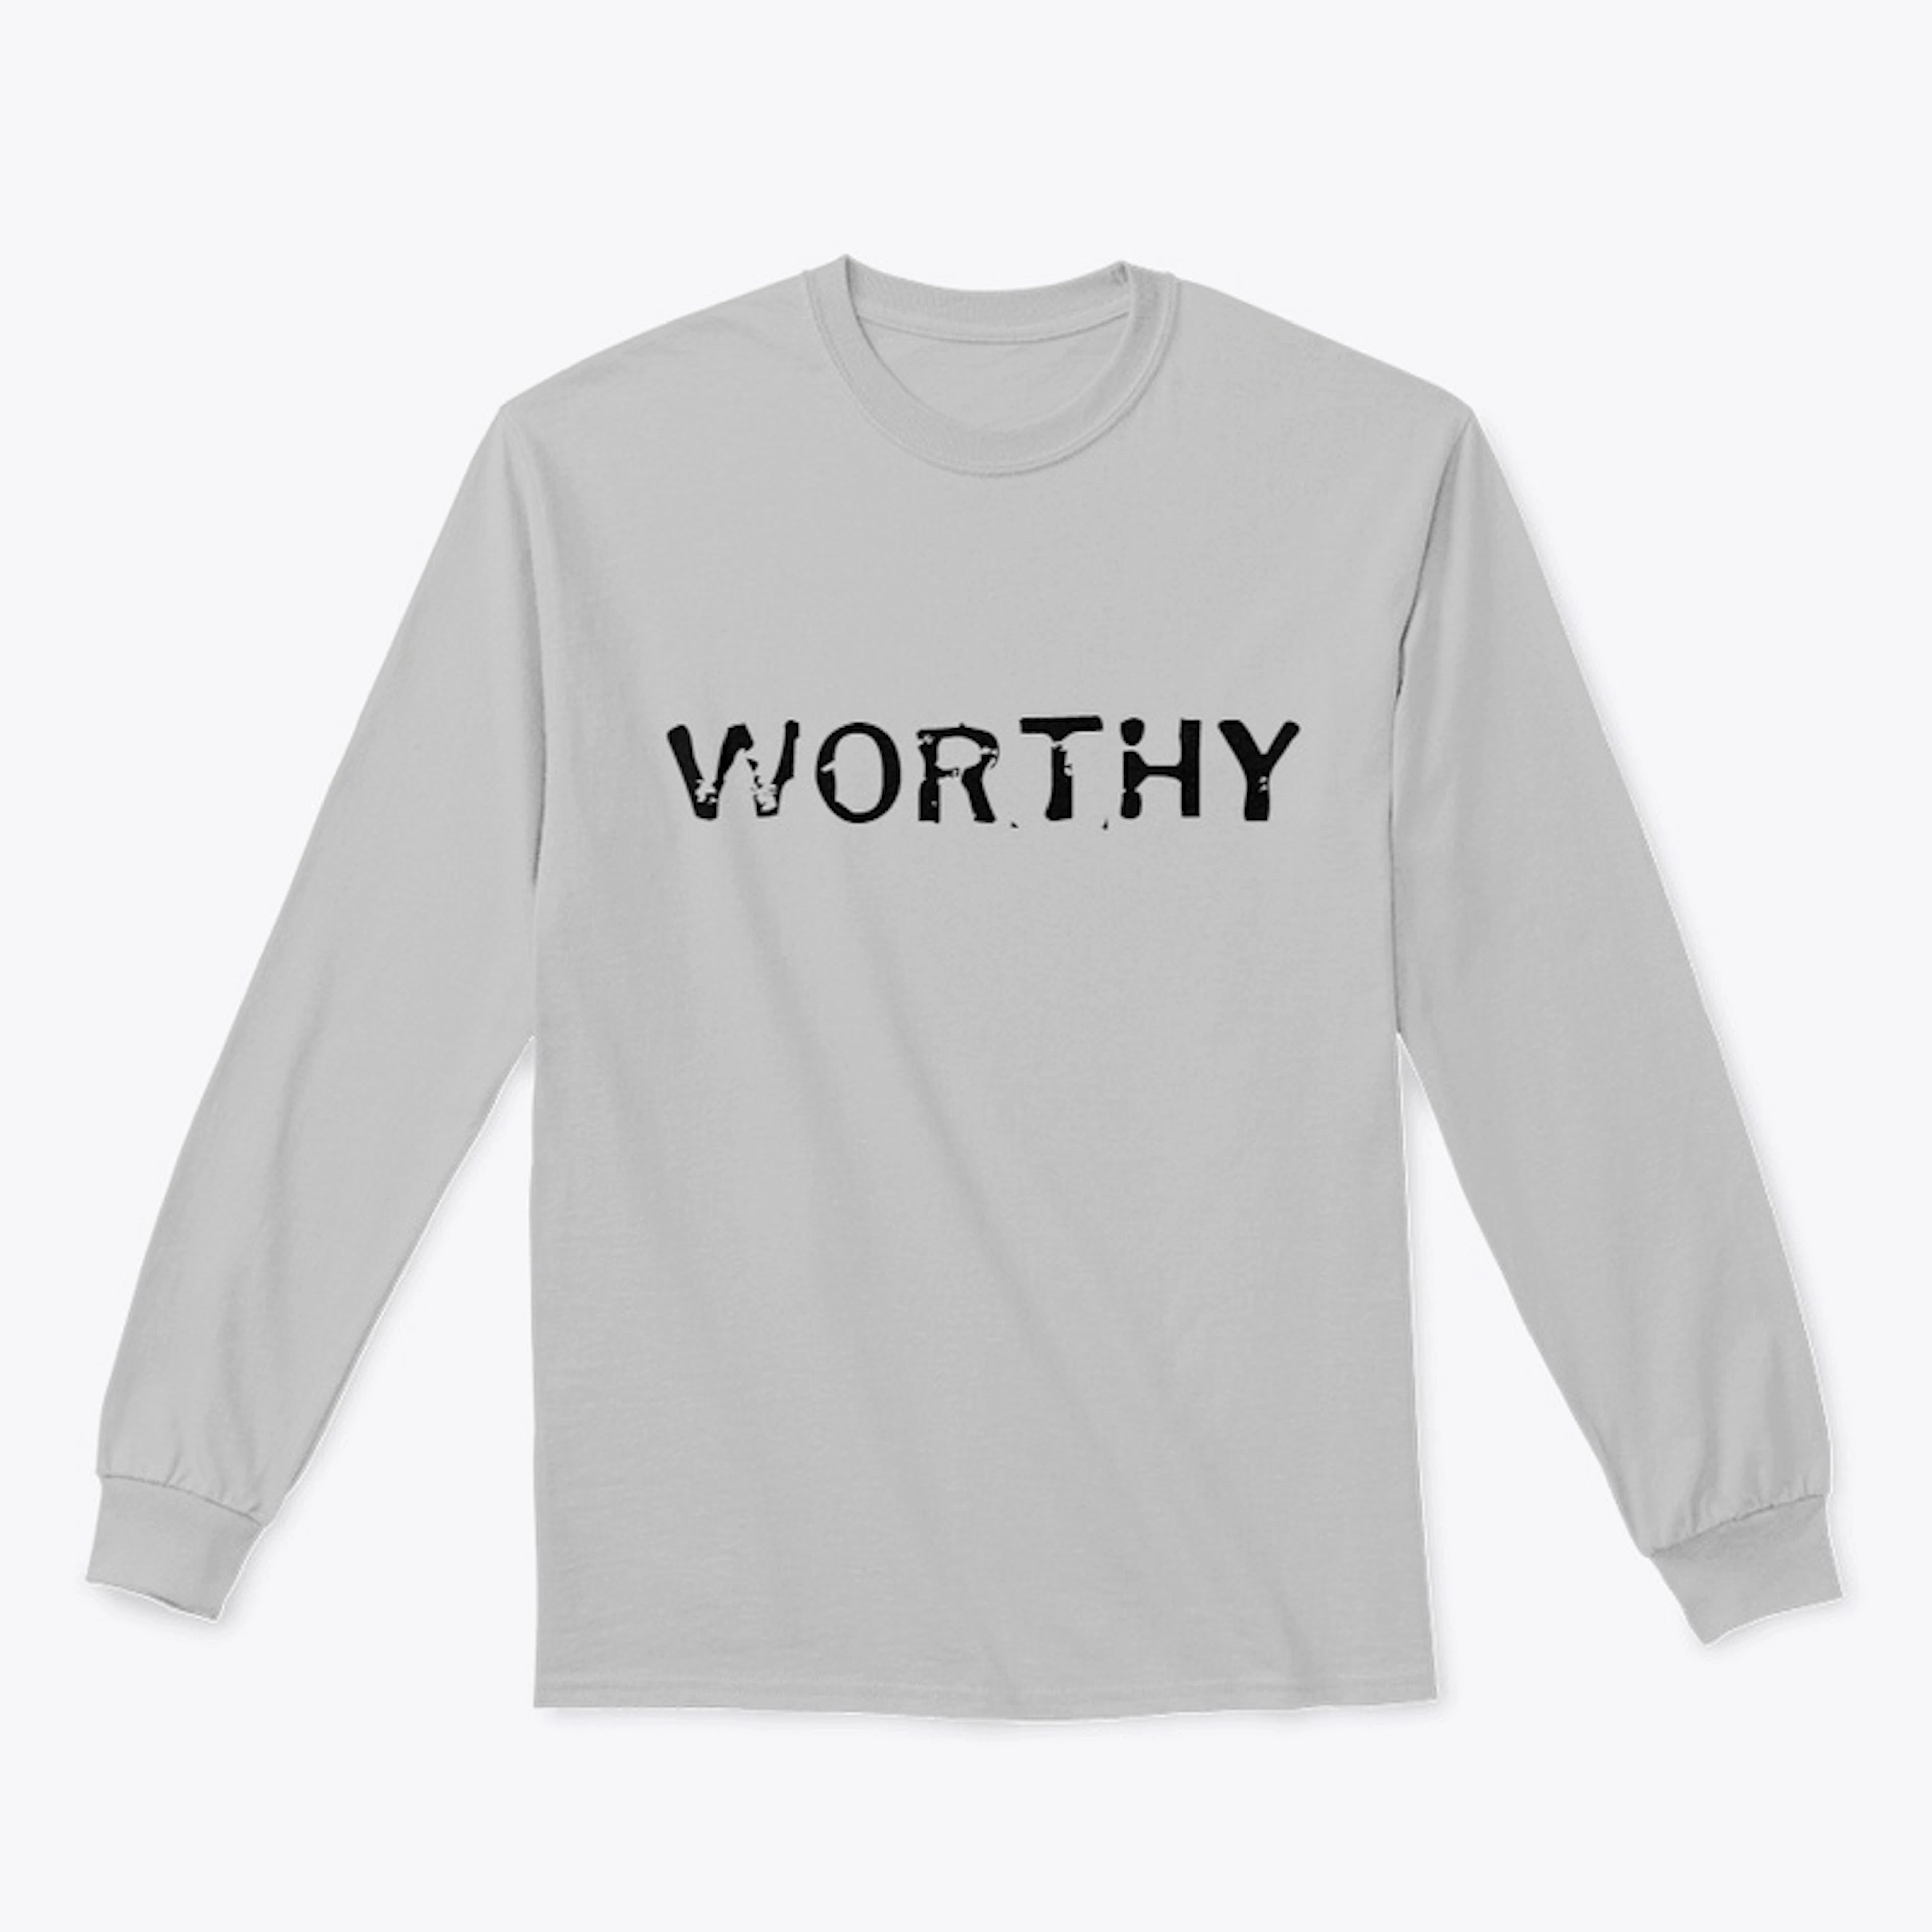 I AM WORTHY